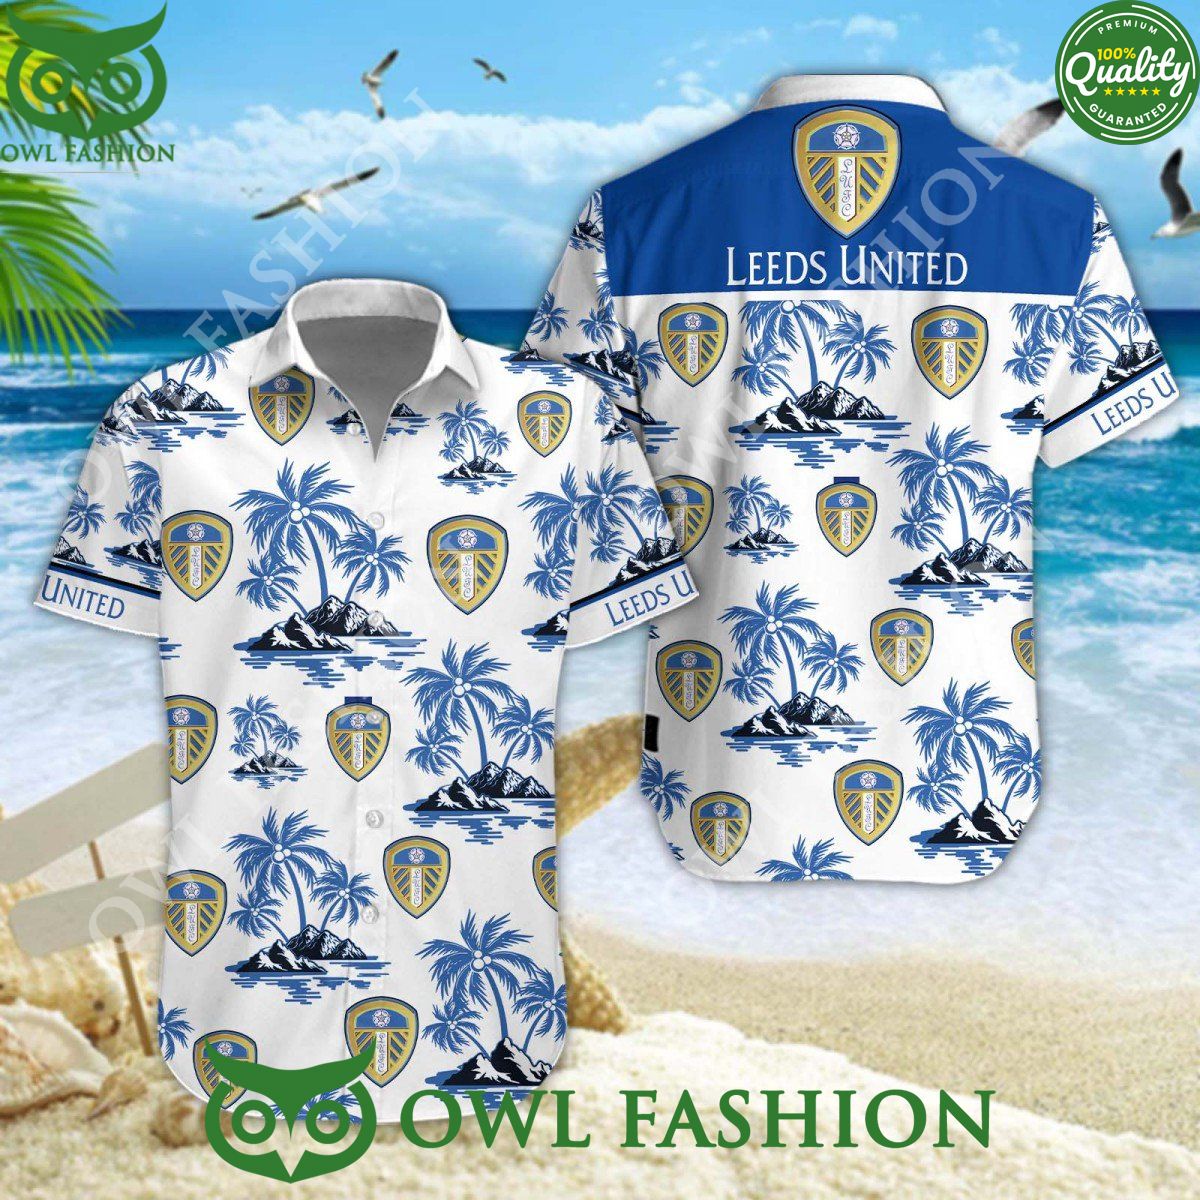 Football Club Leeds United in Championship Island Coconut Hawaiian shirt